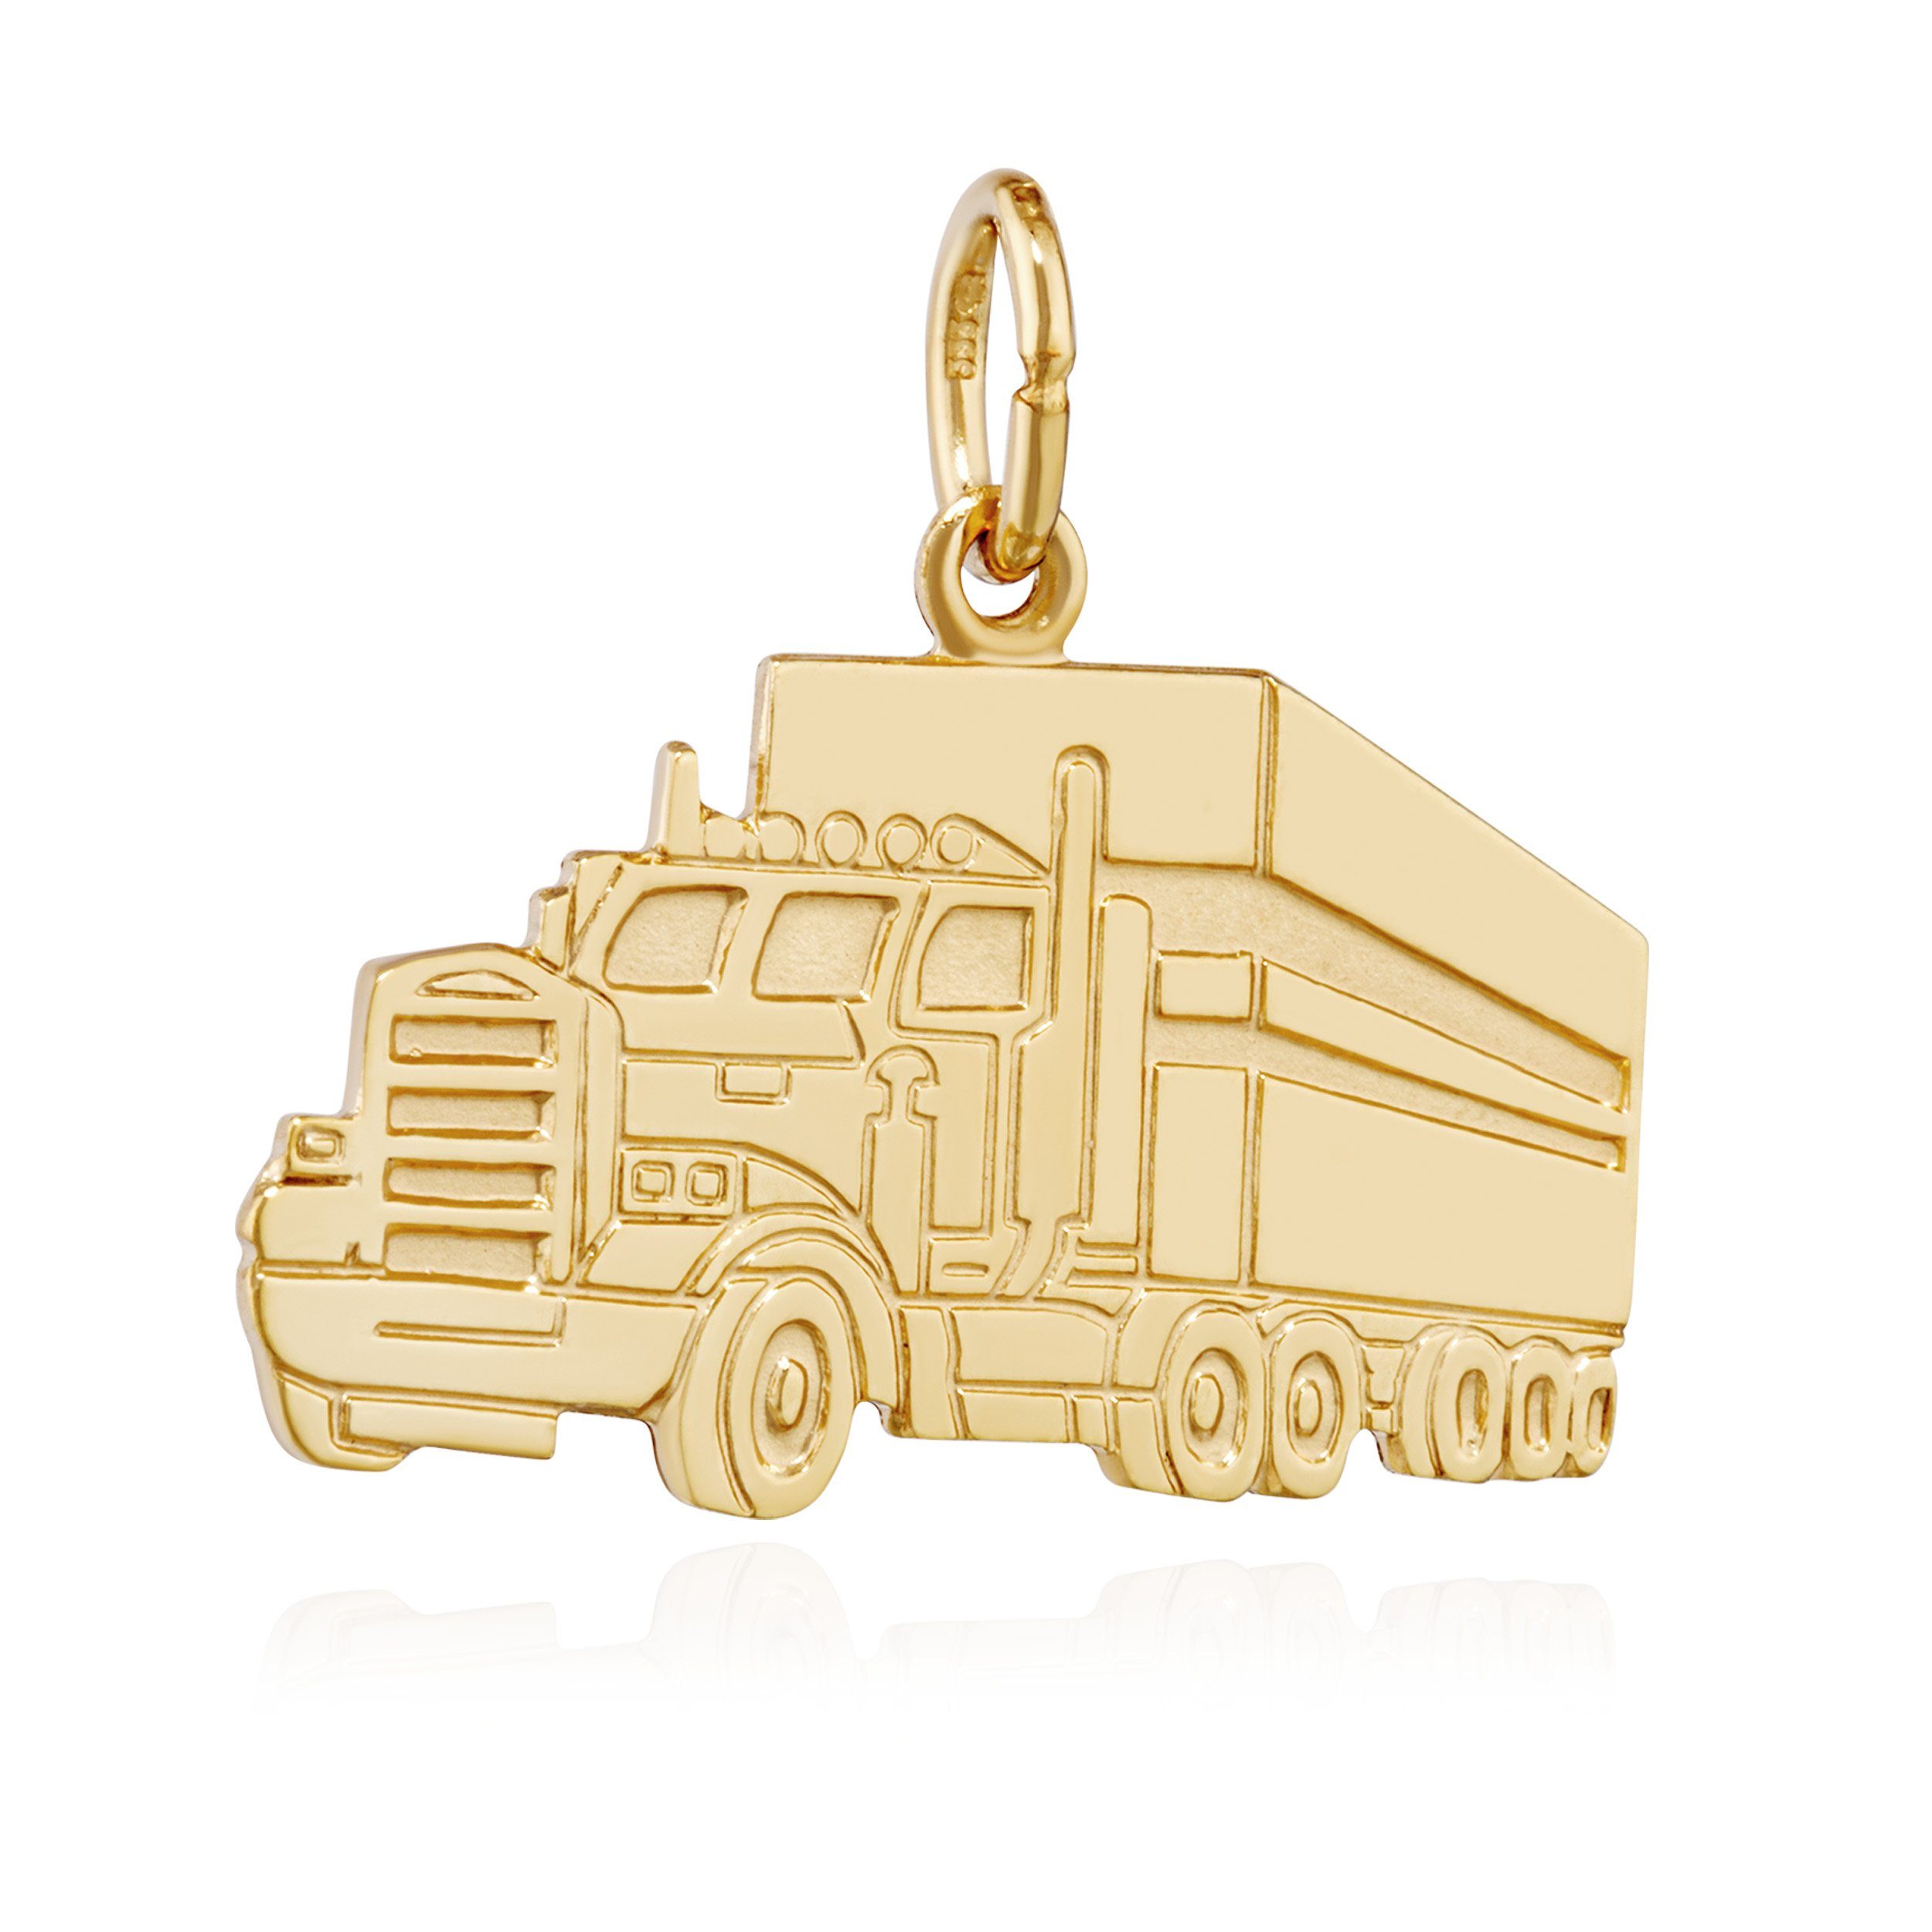 NKlaus Kettenanhänger 20mm Kettenanhänger LKW Truck 333 Gelb Gold glanz-teilmatt Fahrer Gold